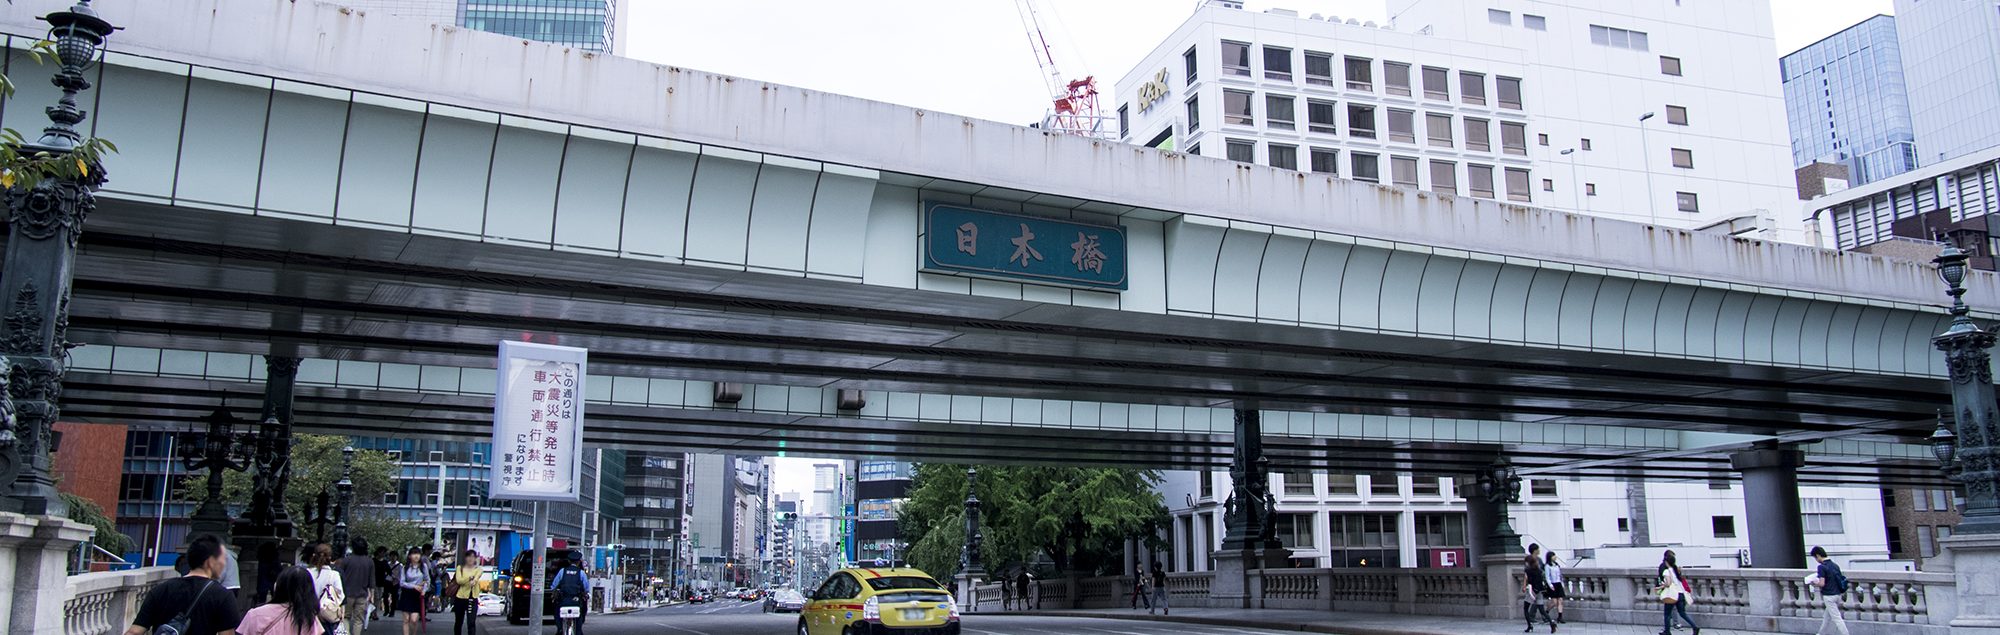 日本橋の身近な街の法律家